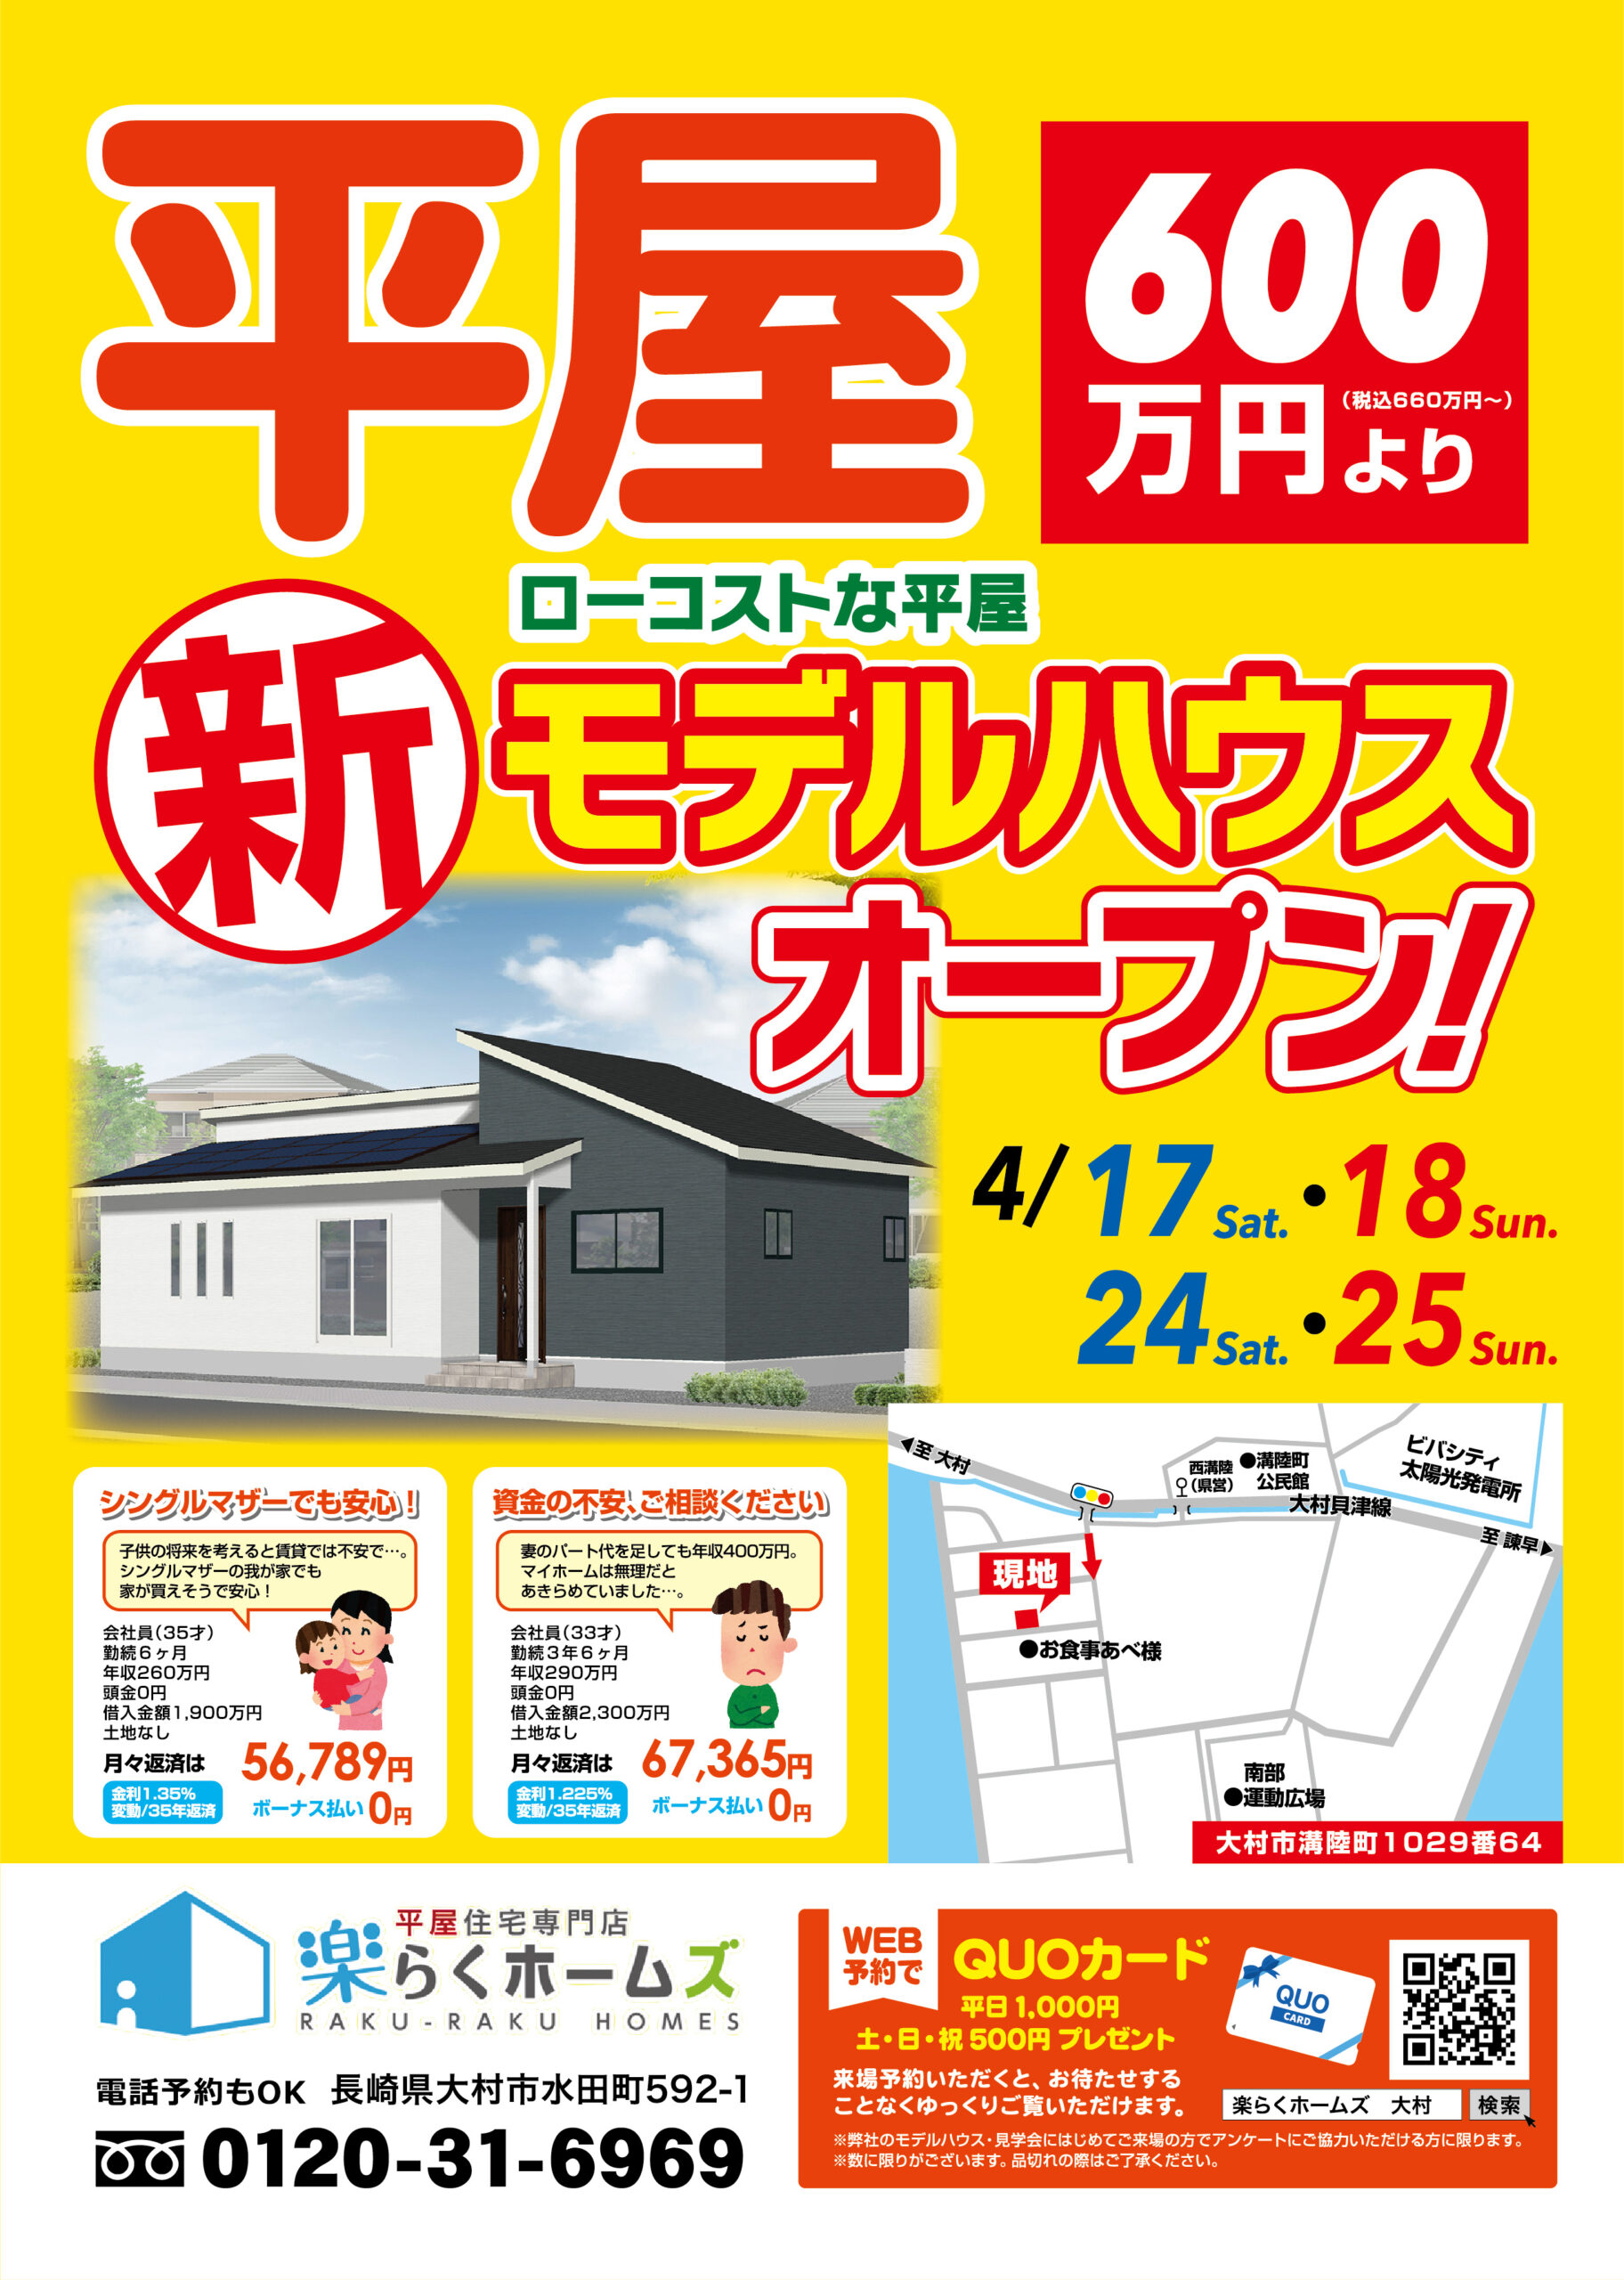 長崎県大村で平屋なら楽らくホームズ らくらくホームズ 平屋専門店なら新築平屋住宅が600万円